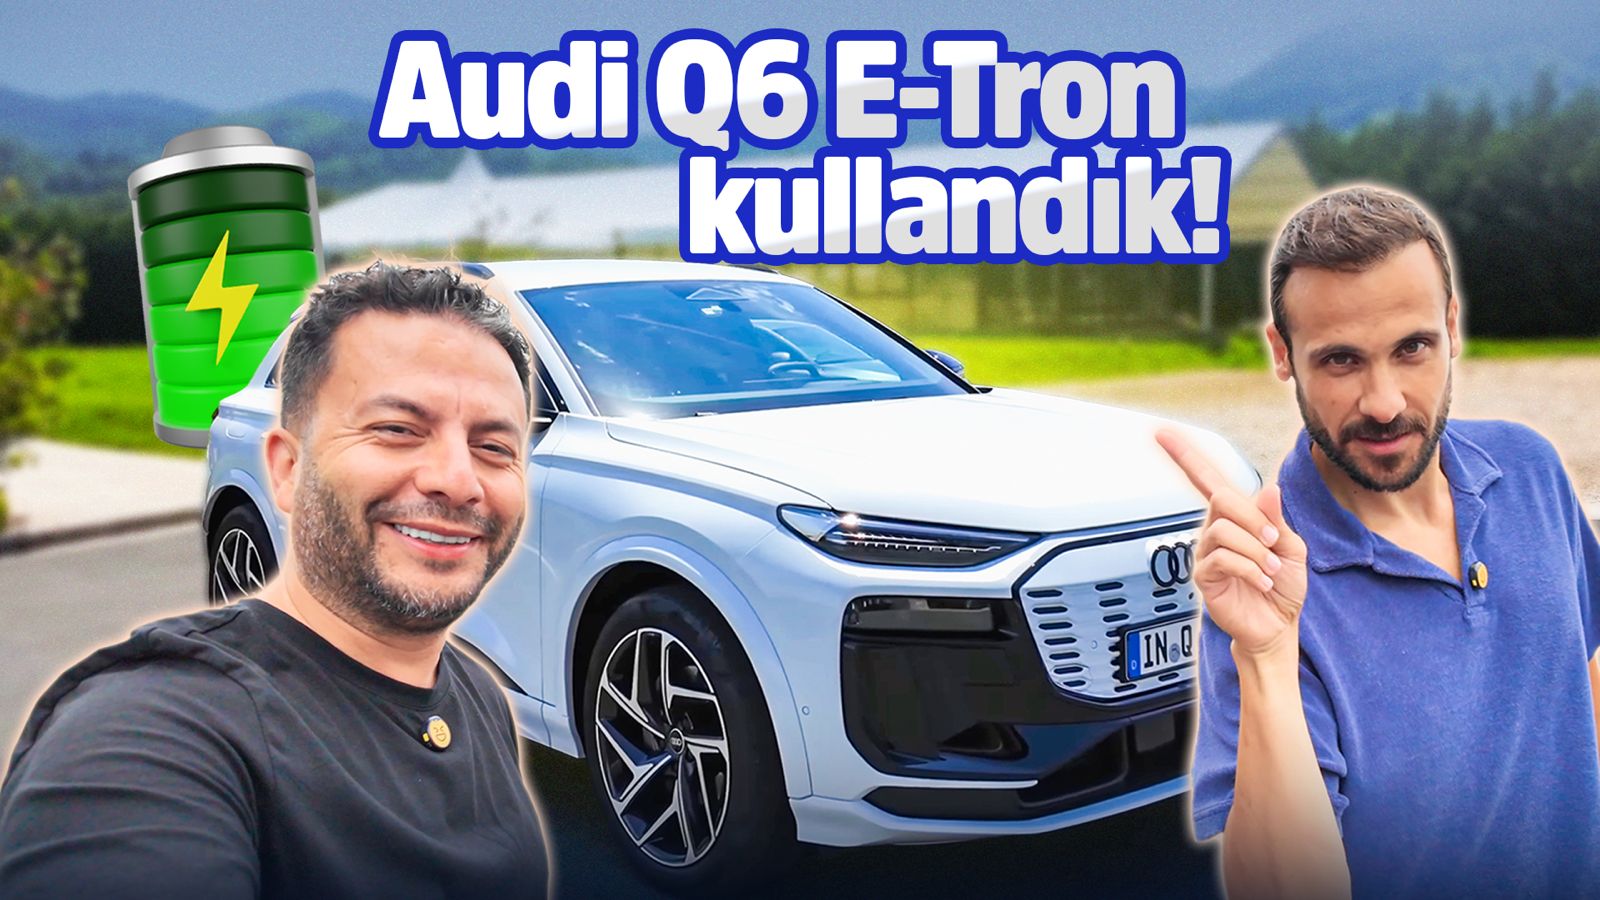 Umit-Erdim-ile-Audi-Q6-e-tron-sohbeti.jpg